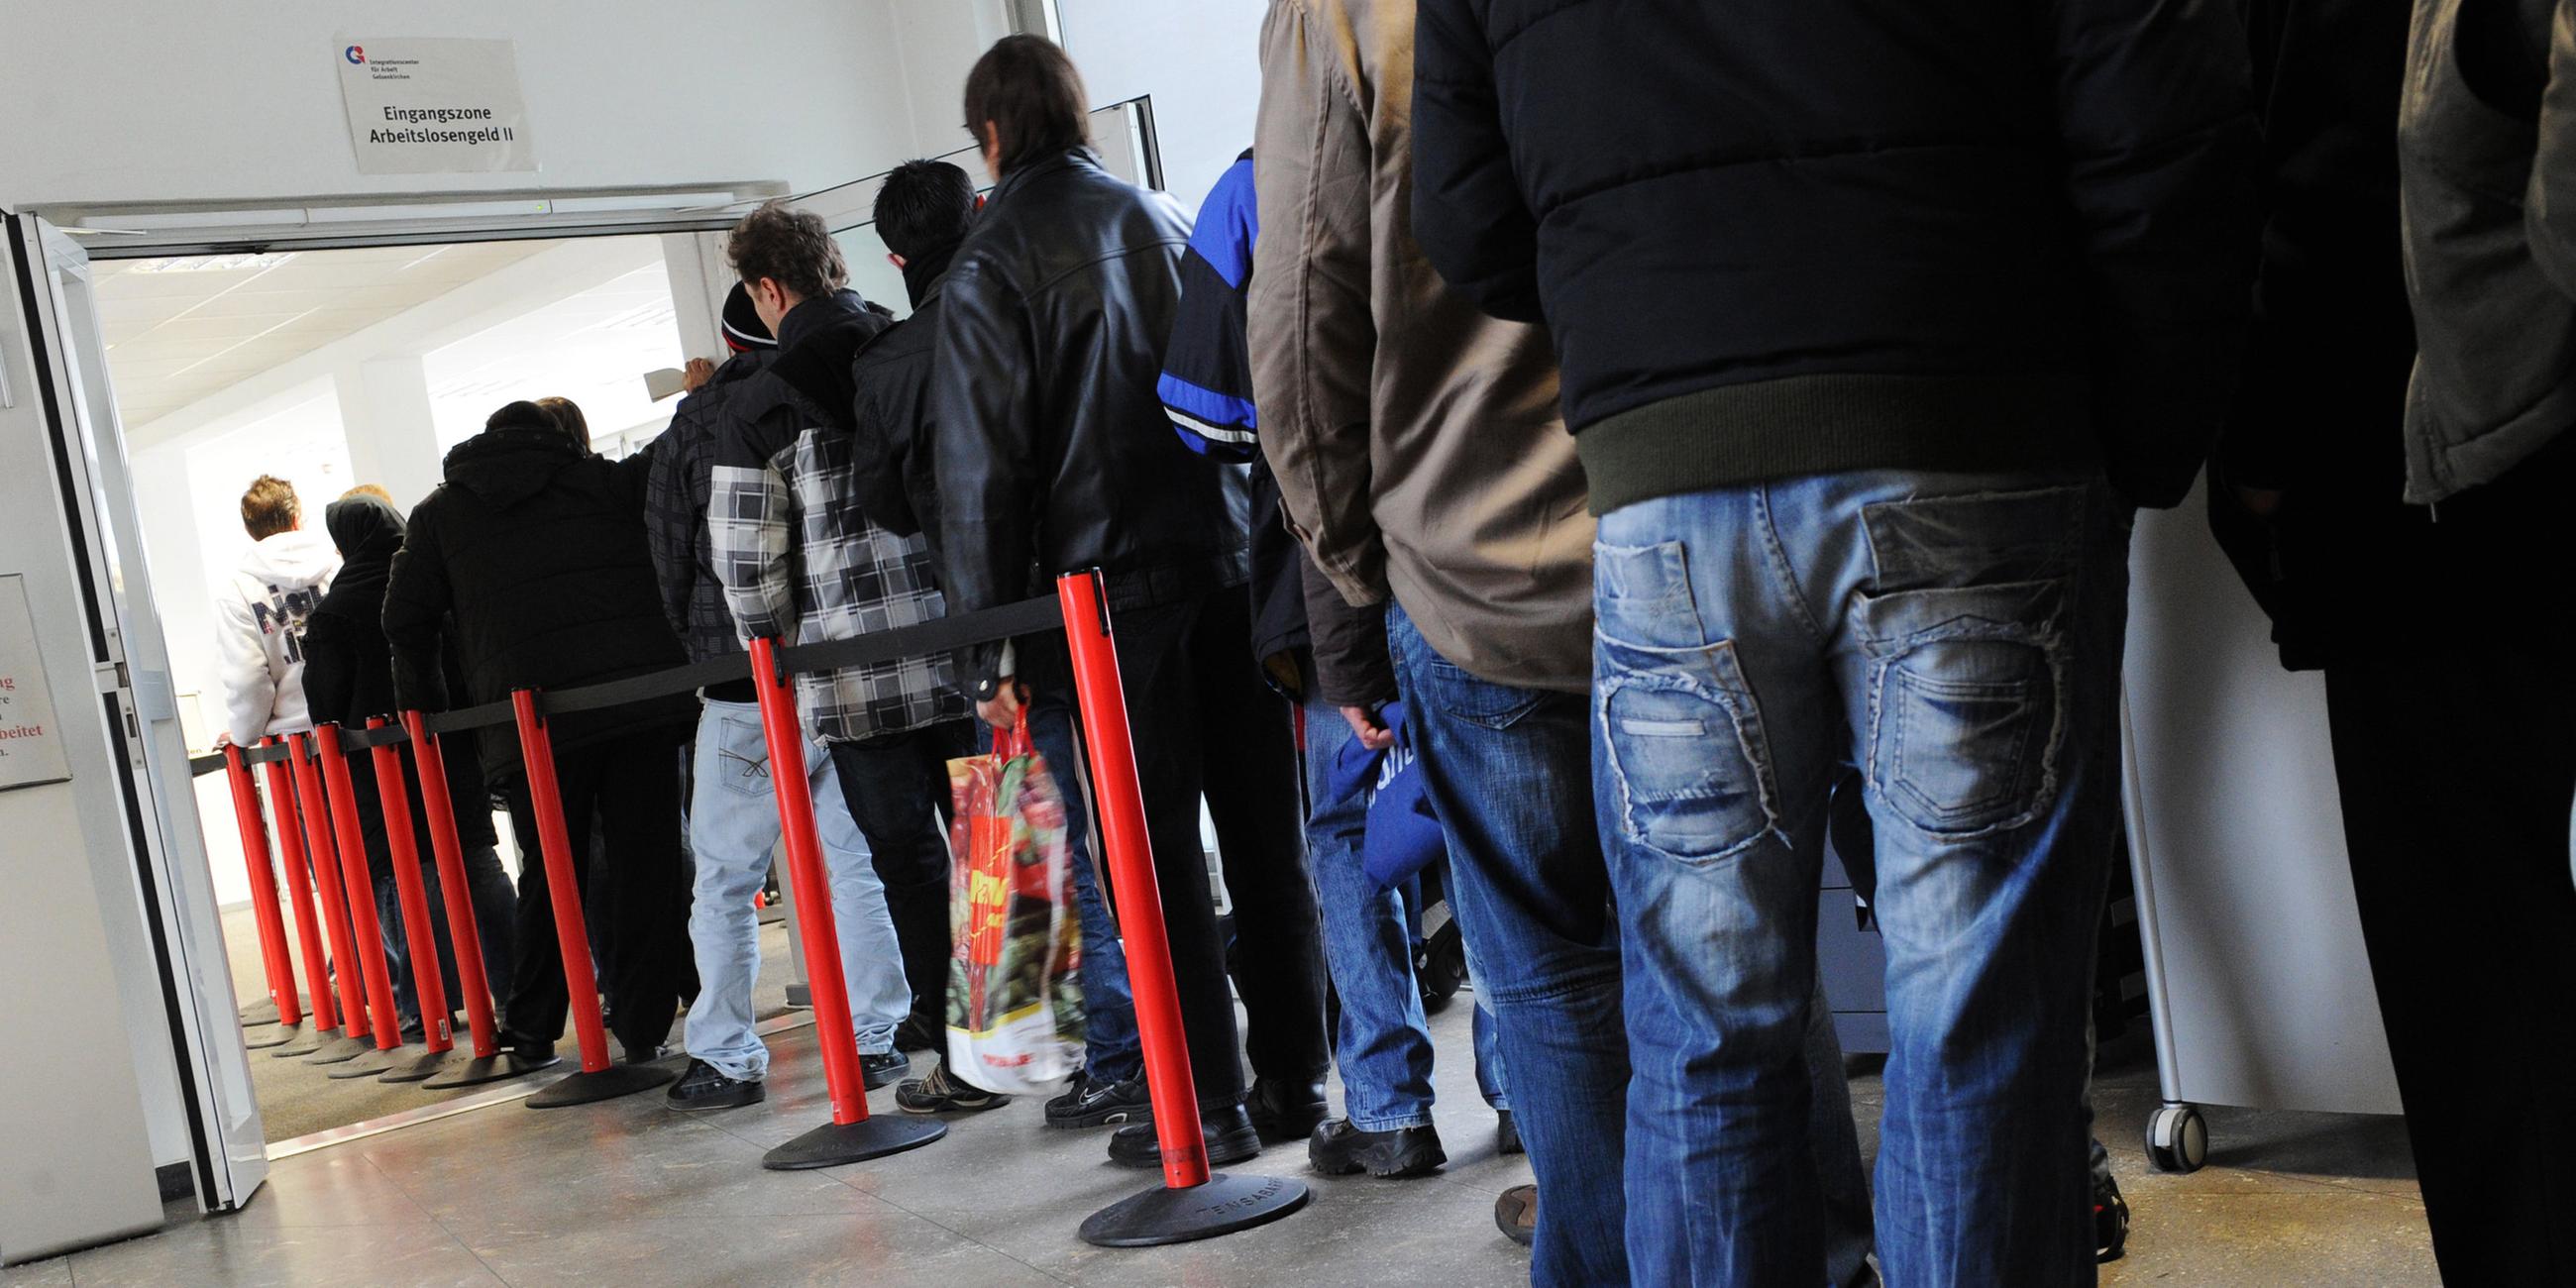 Arbeitslose warten in einer Warteschlange im Jobcenter